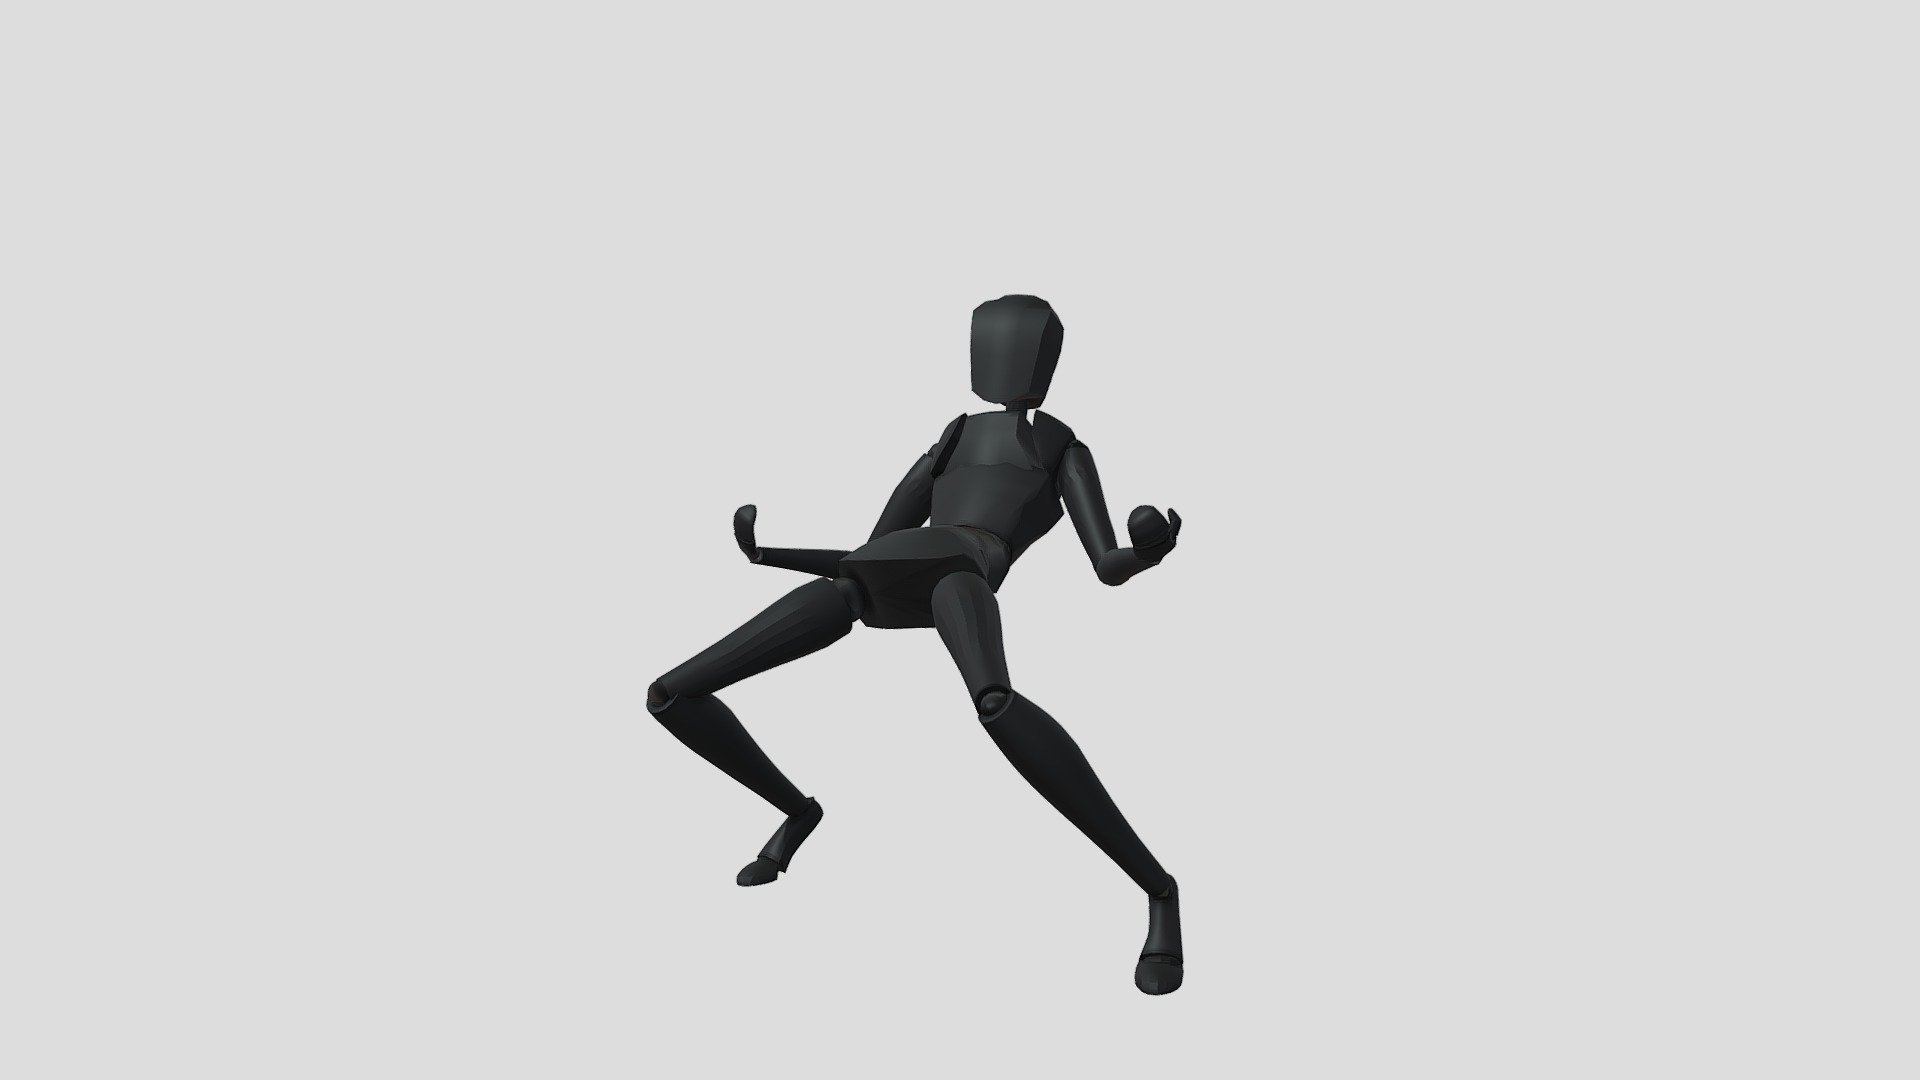 616 imagens, fotos stock, objetos 3D e vetores de Run cycle animation |  Shutterstock